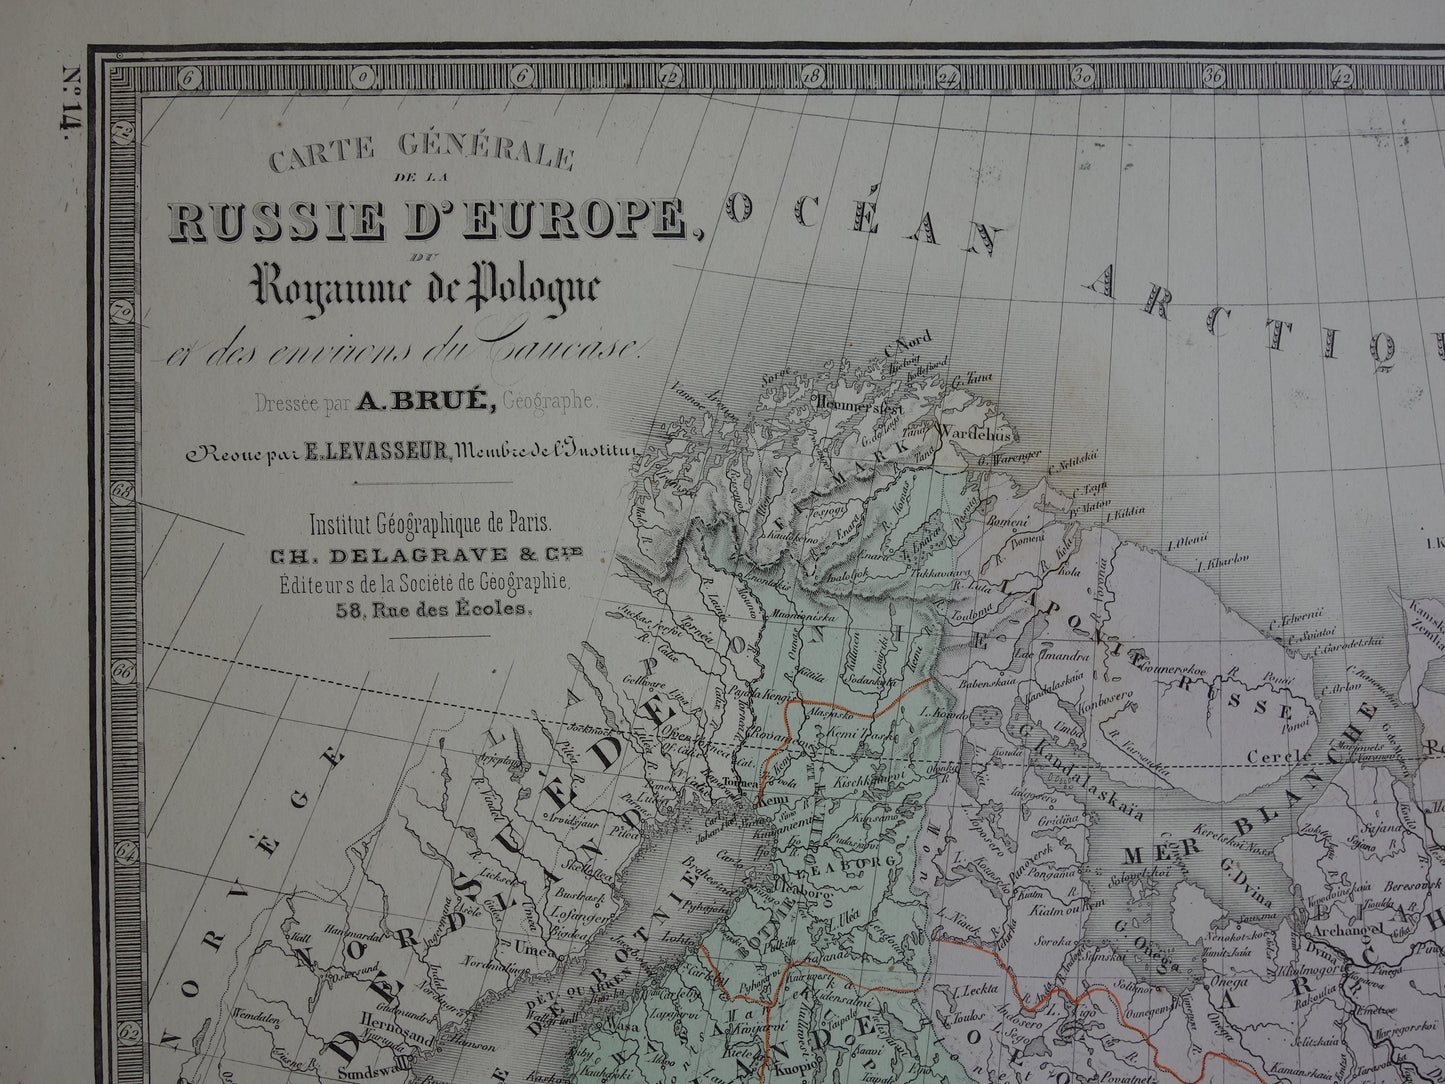  carte generale de la russie d'europe du royaume ode pologne et des environs caucase brue levasseur